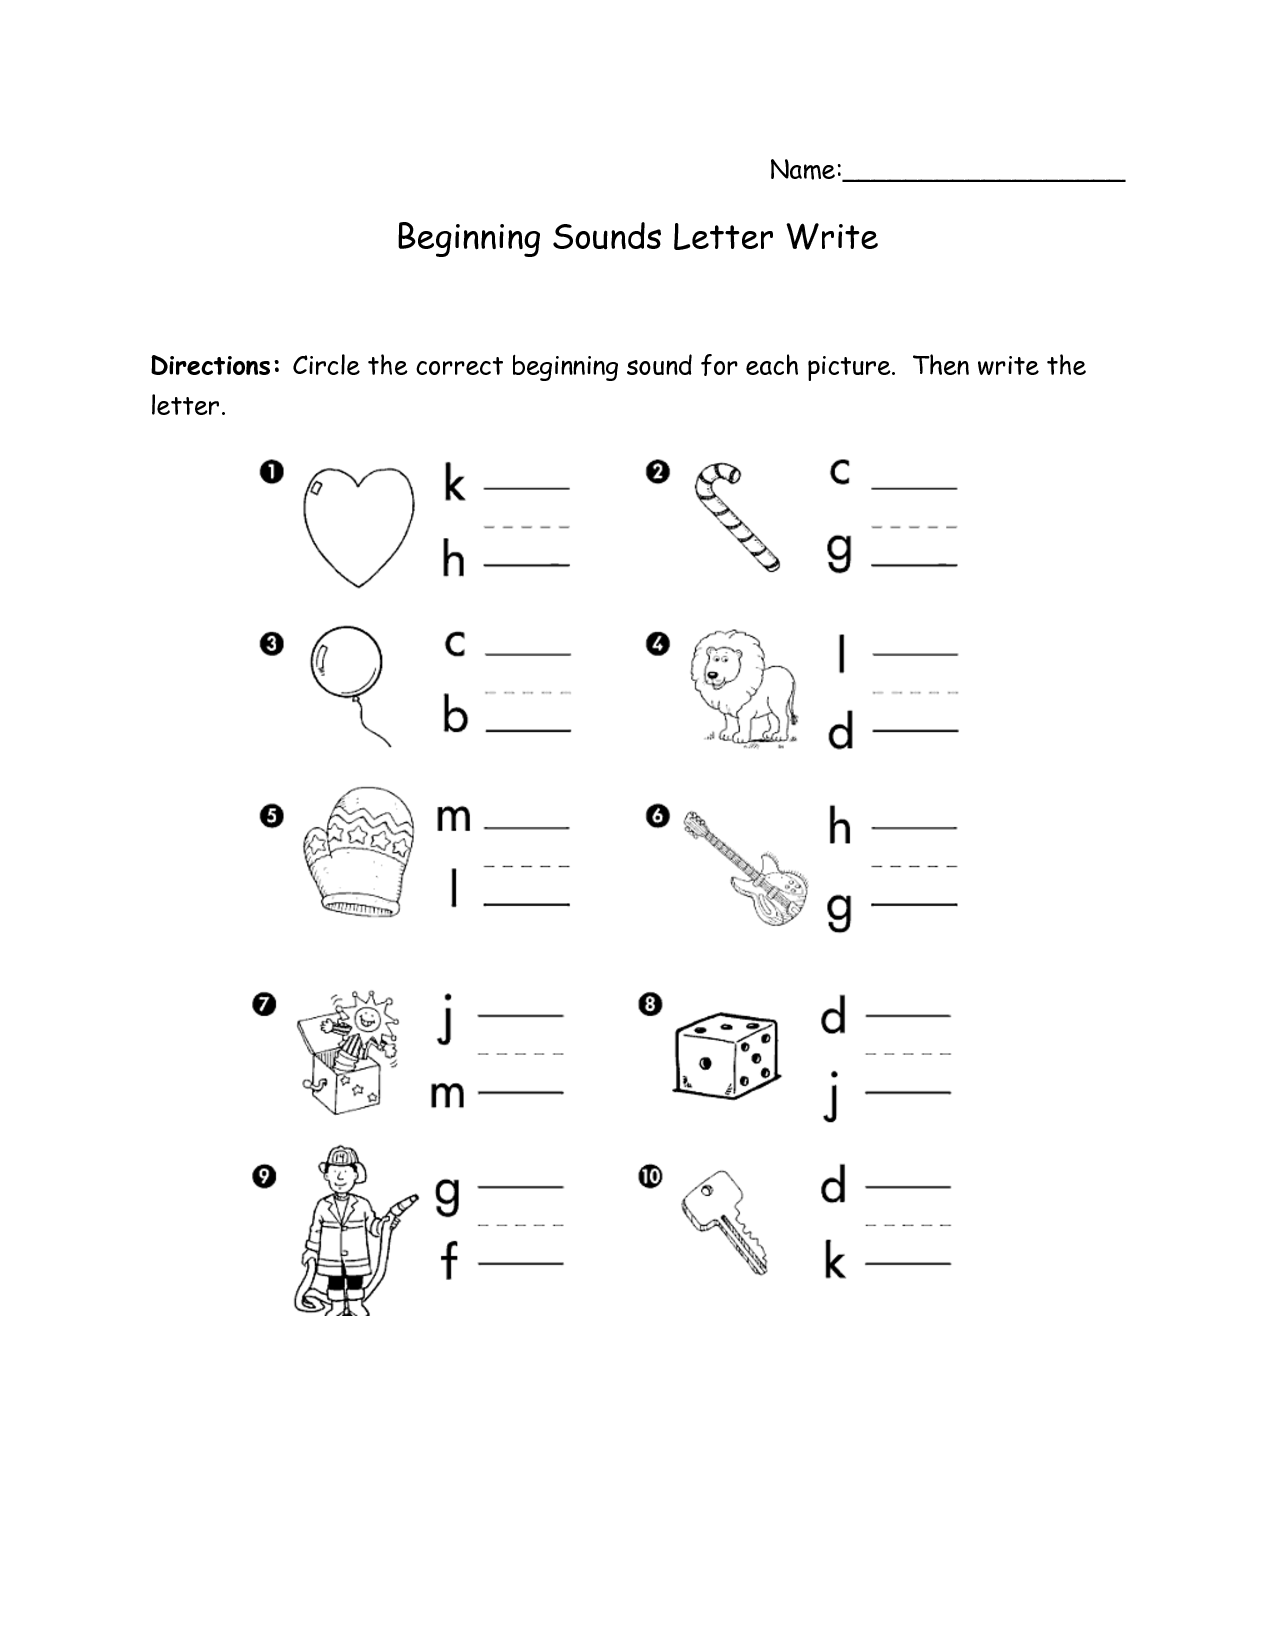 Beginning Letter Sounds Worksheet Image